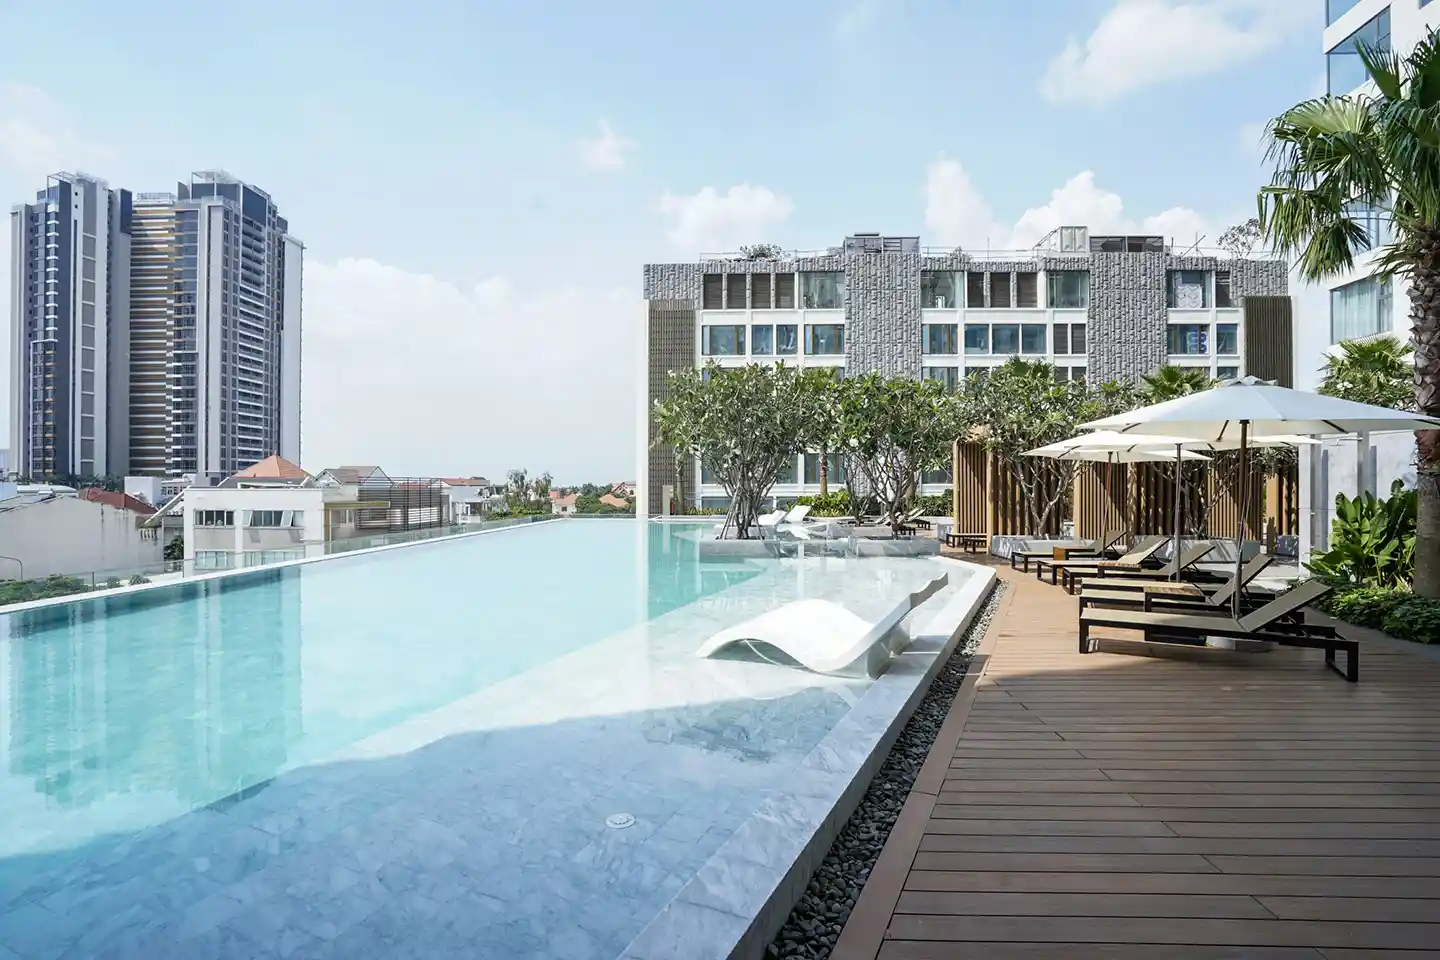 Gateway Thao Dien apartments in HCMC